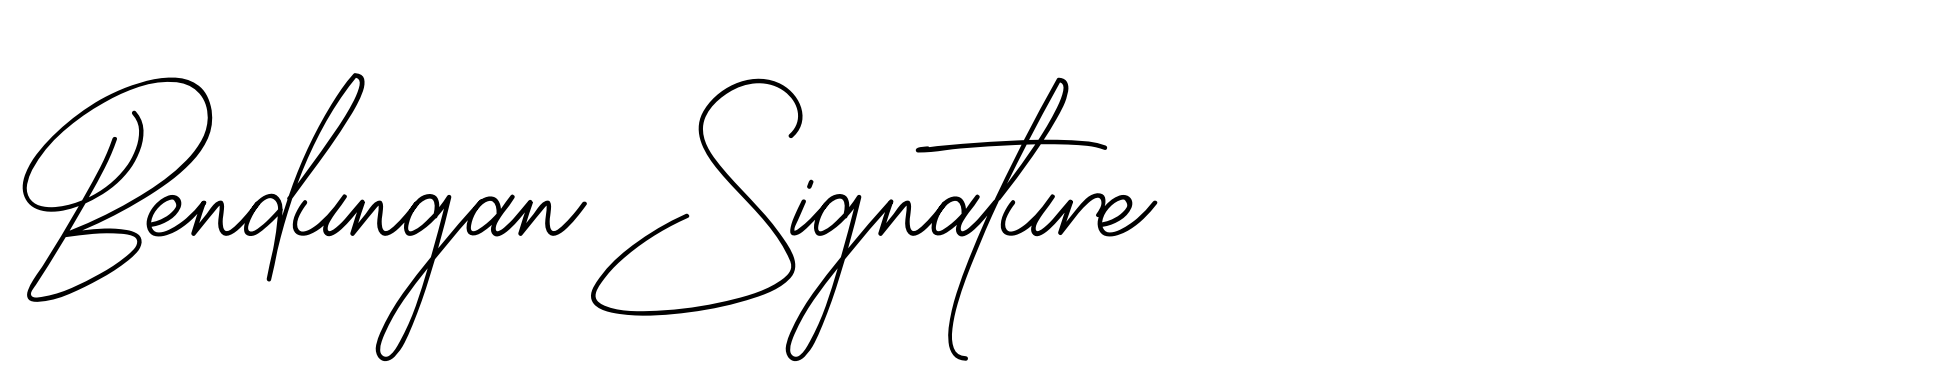 Bendungan Signature